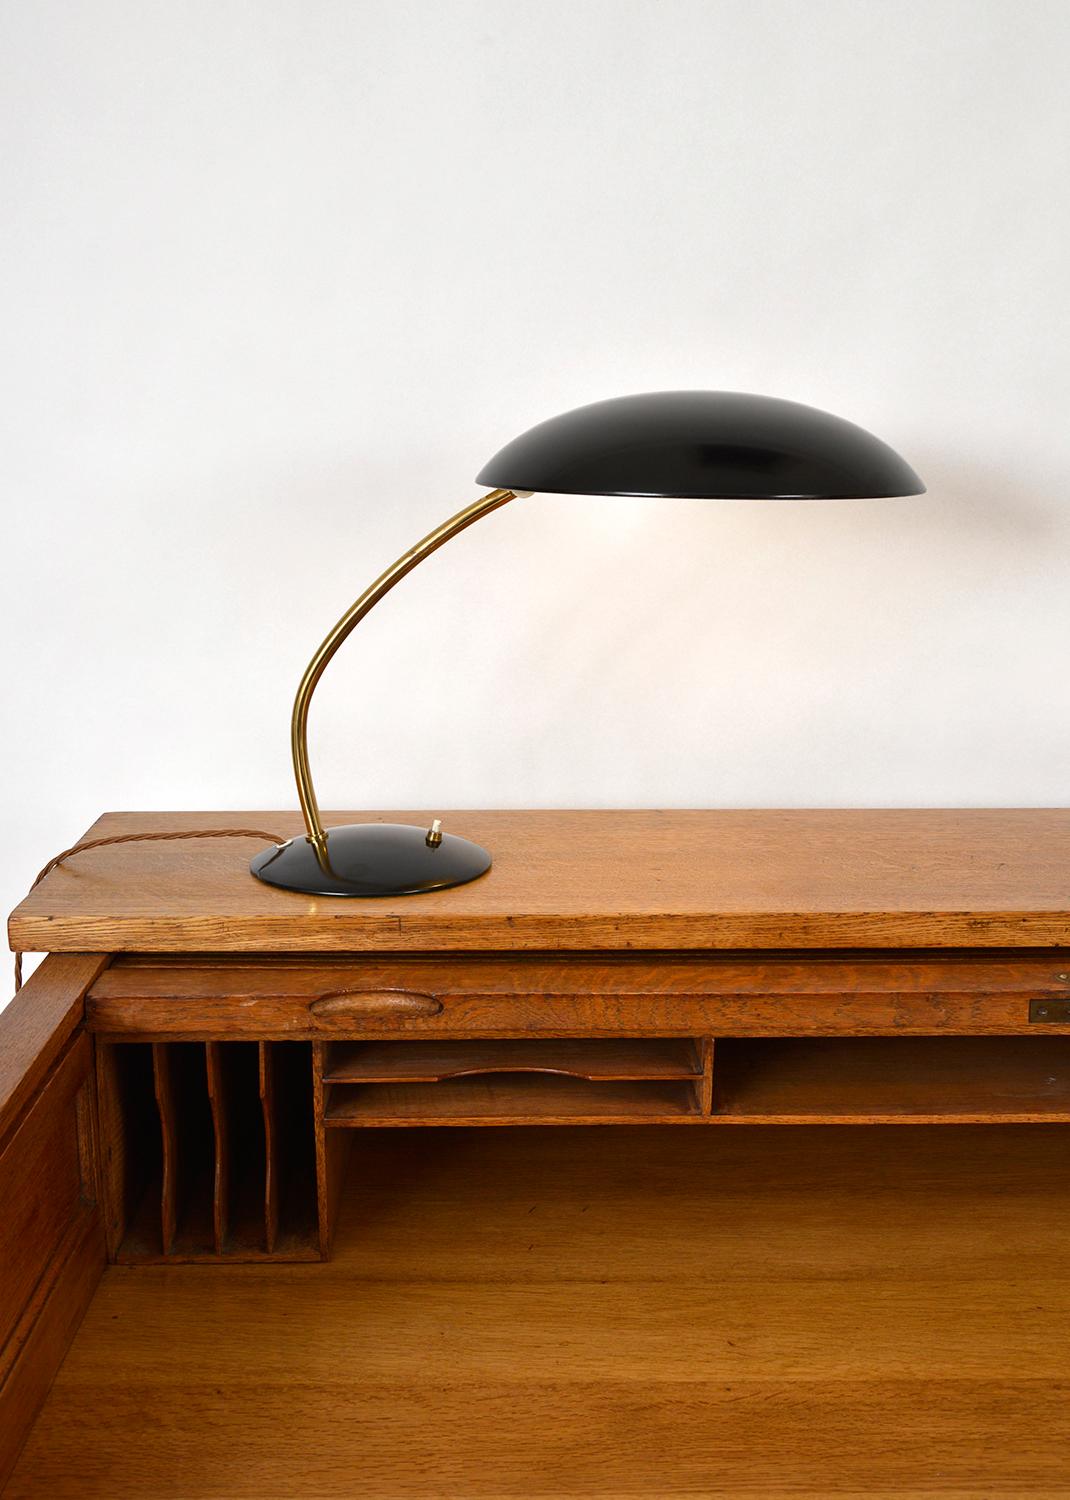 Bauhaus Midcentury Kaiser Idell Desk Task Lamp by Christian Dell Model 6782 German 1950s